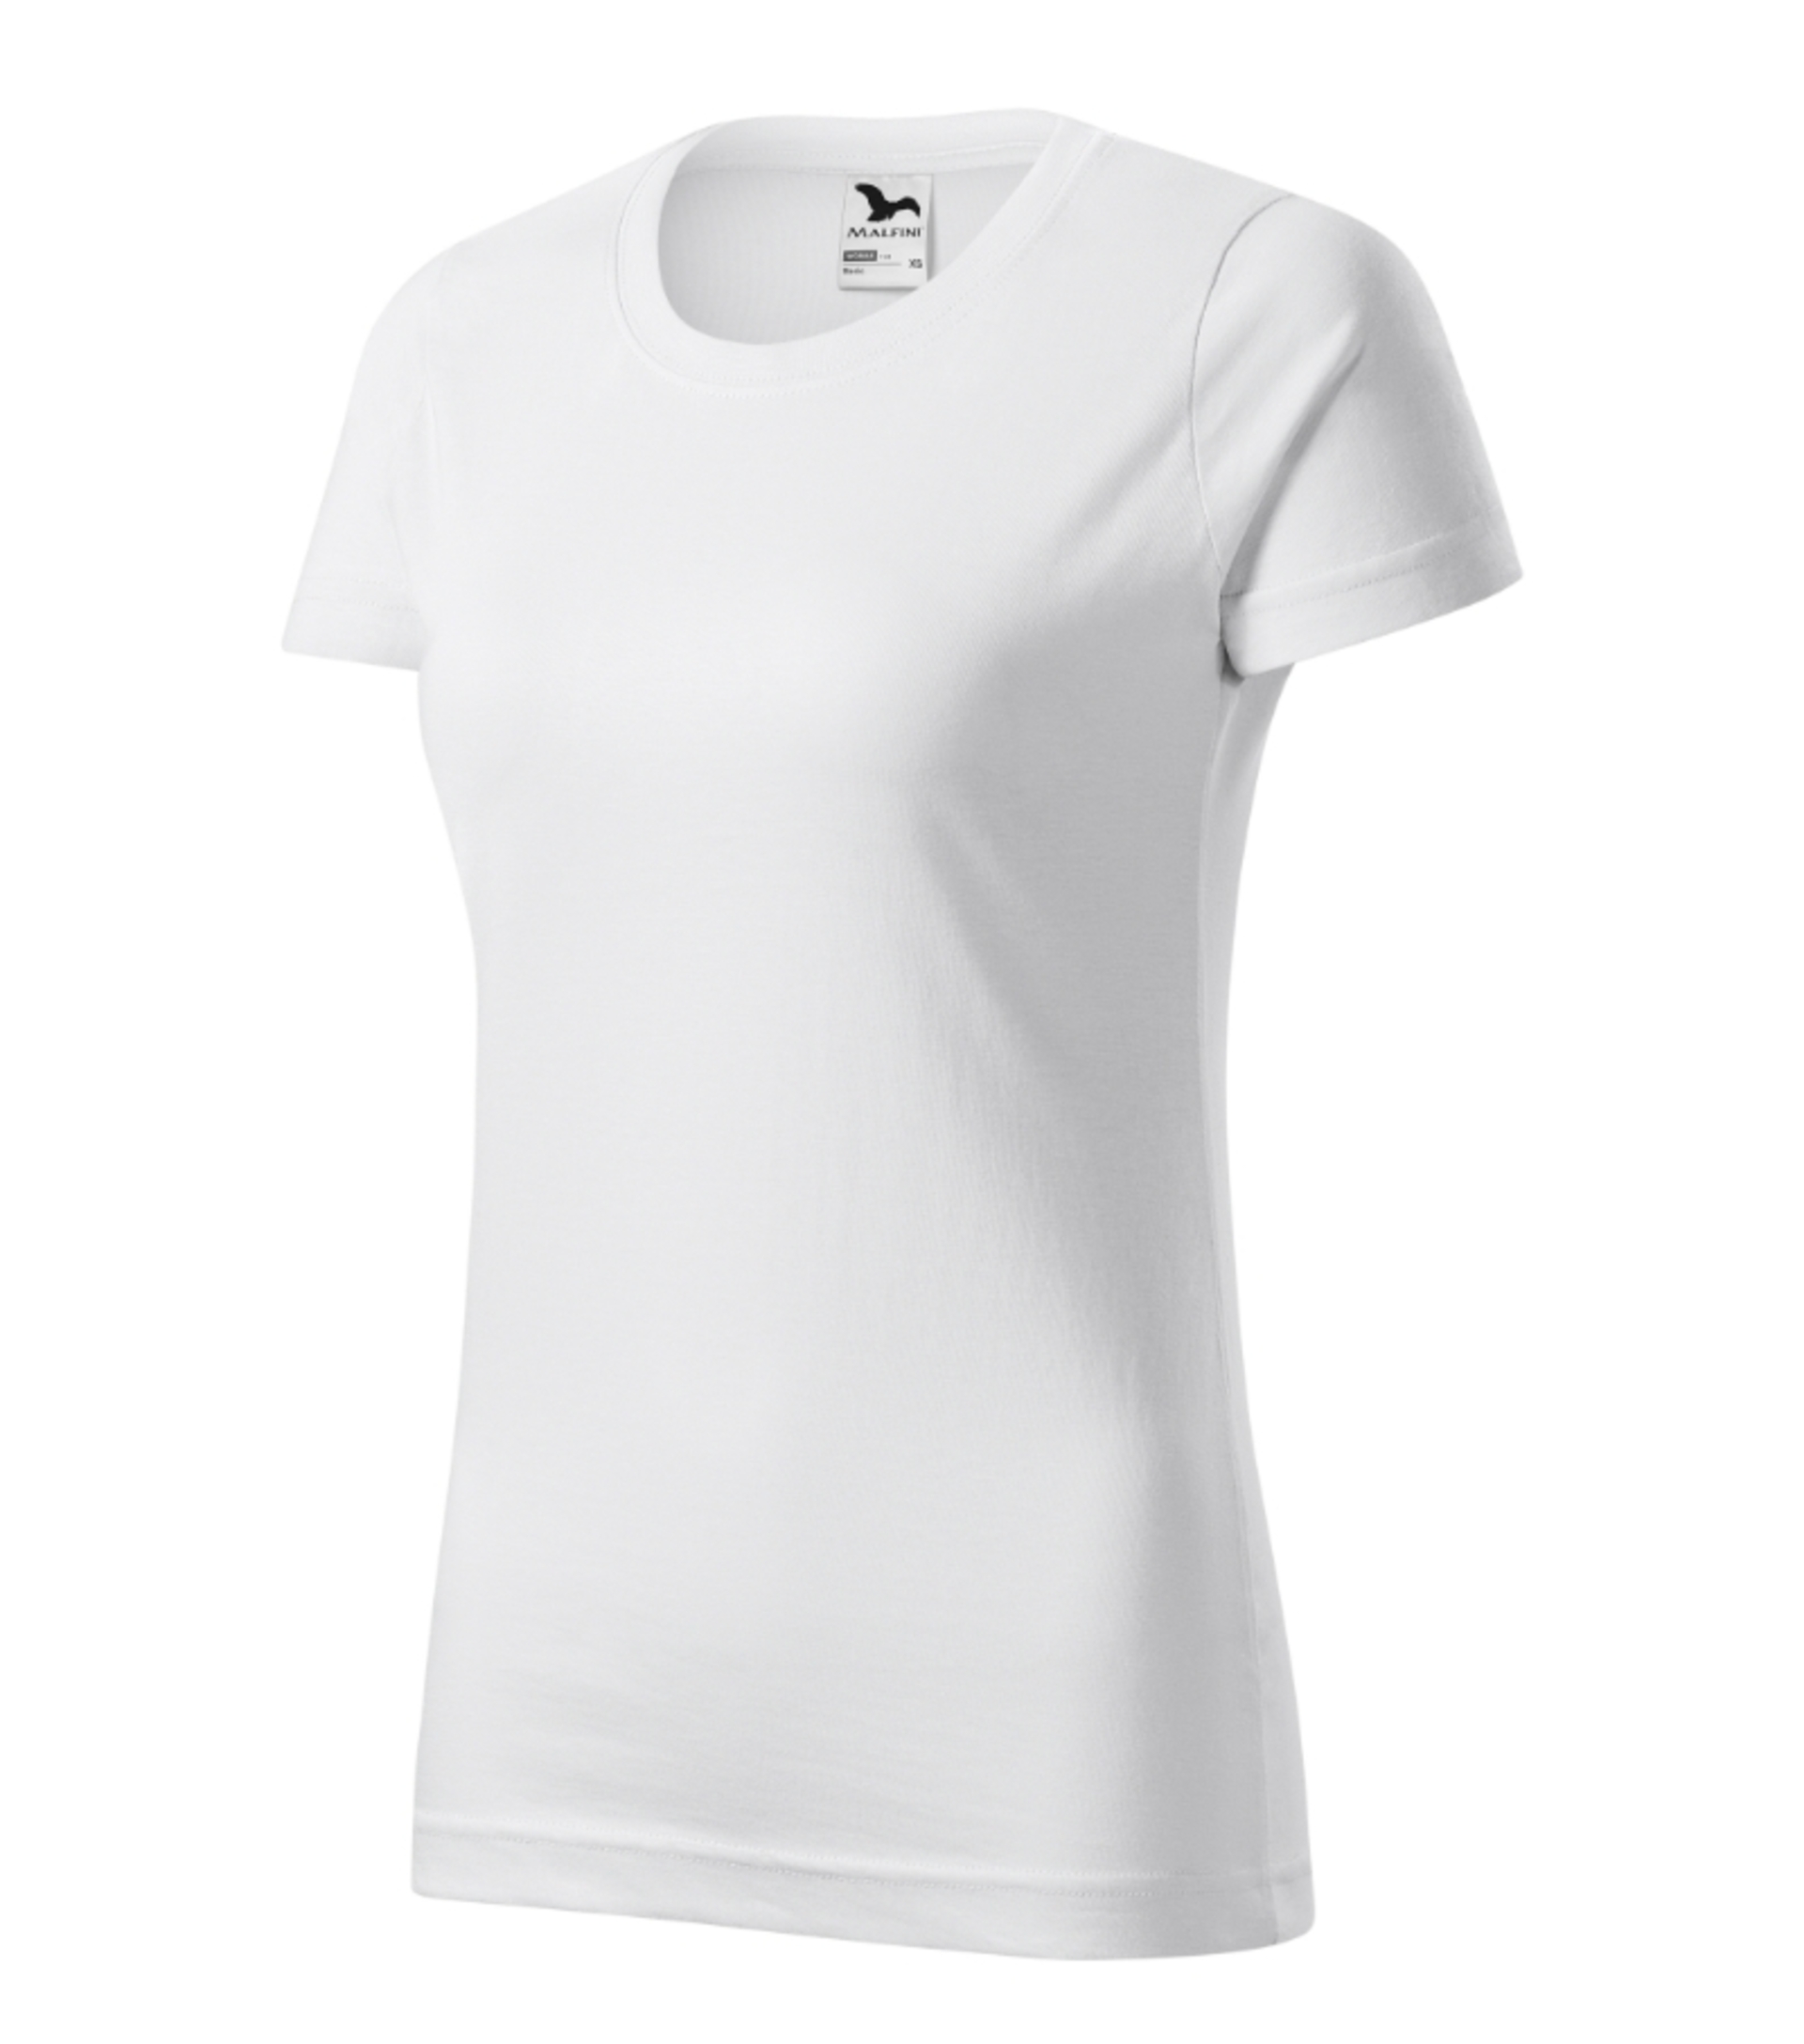 Malfini ADLER BASIC dámské Tričko bílá L + Bezplatné vrácení zboží